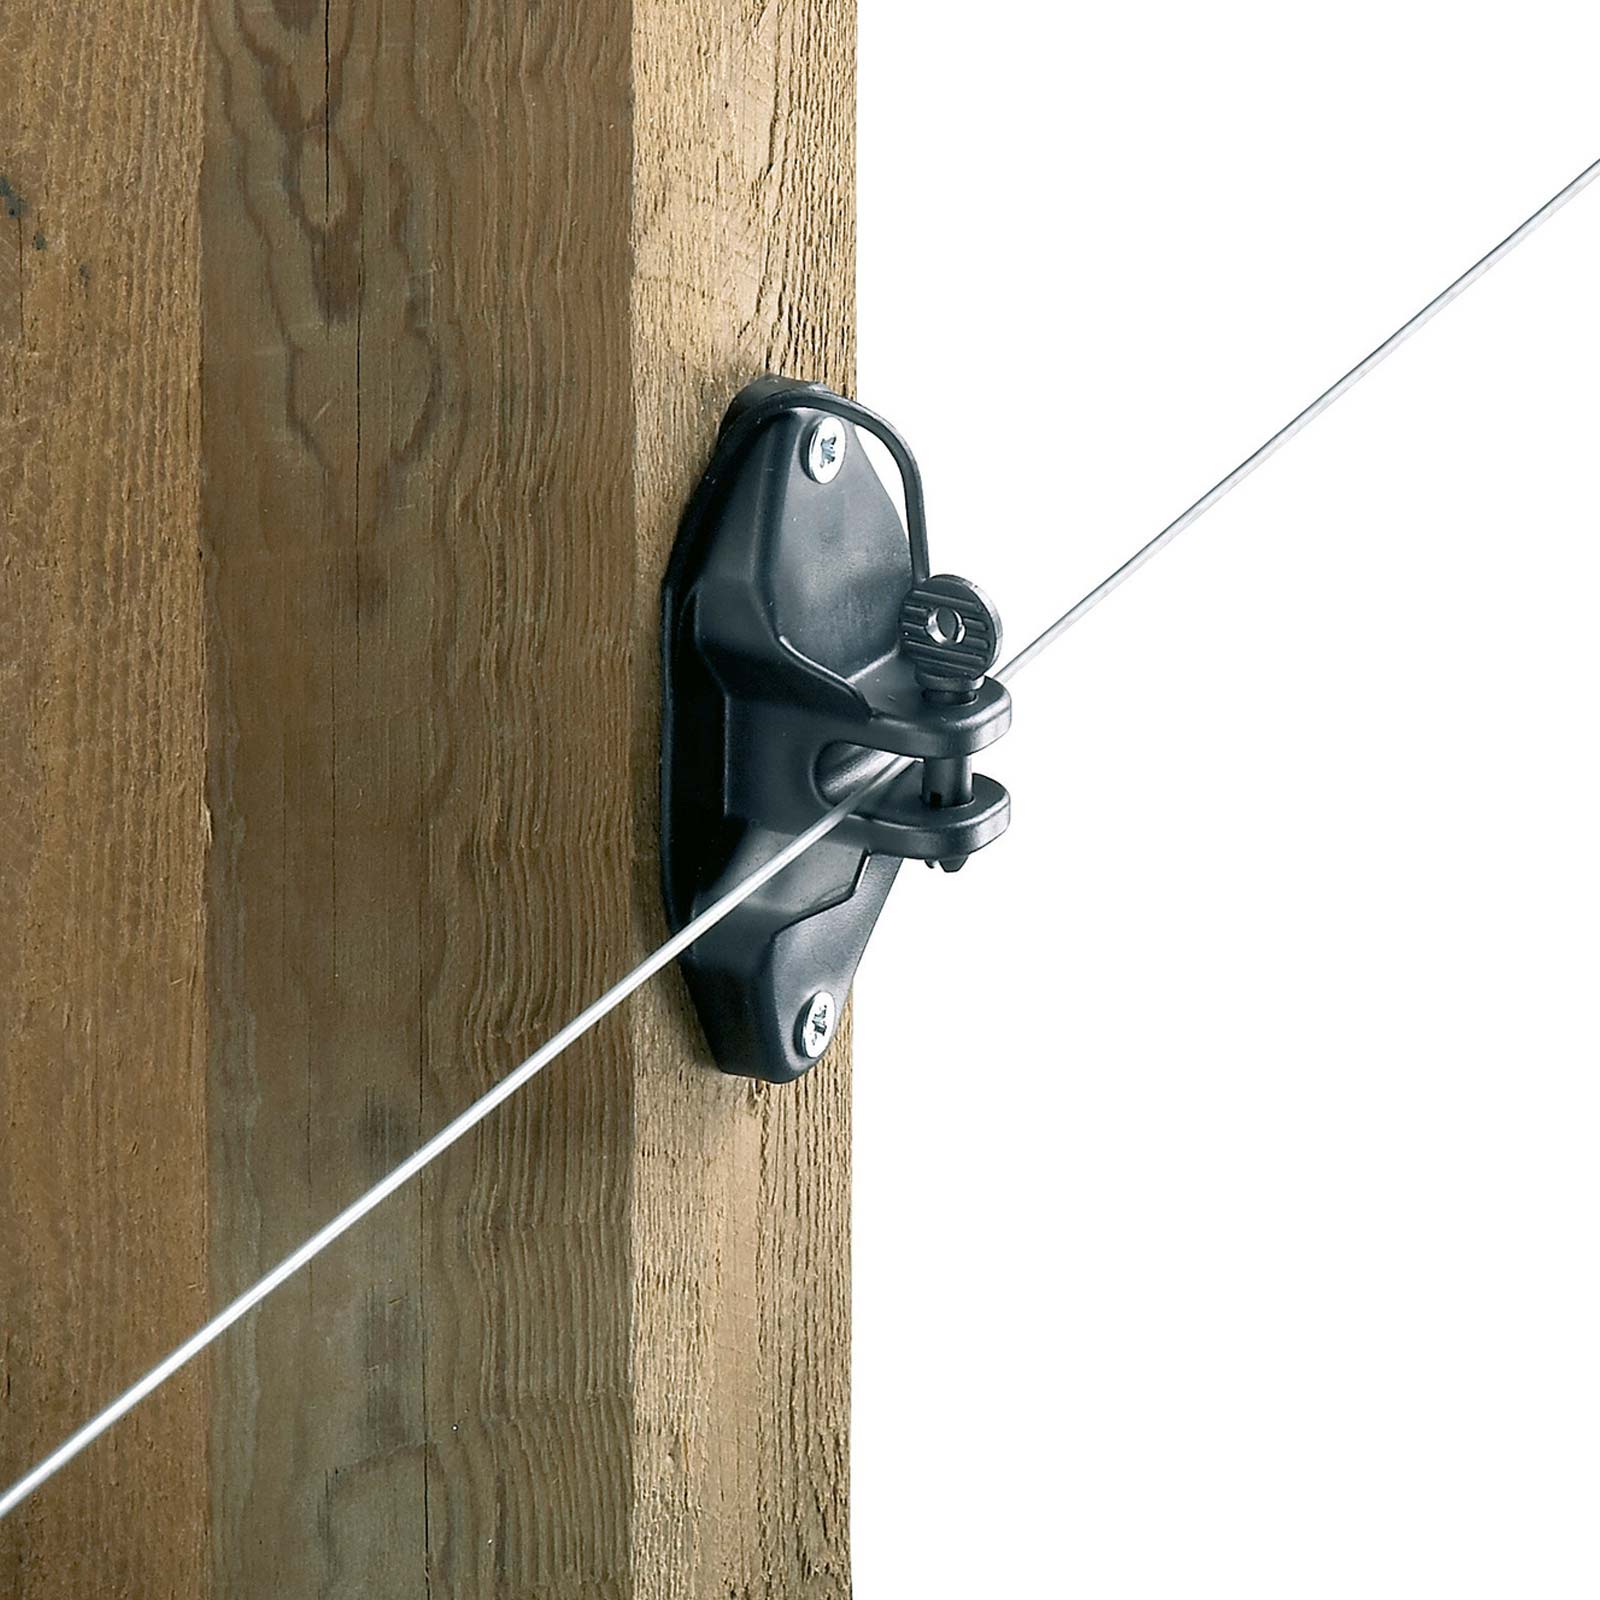 25x Pinlock szigetelő kötélhez, zsinórhoz, dróthoz